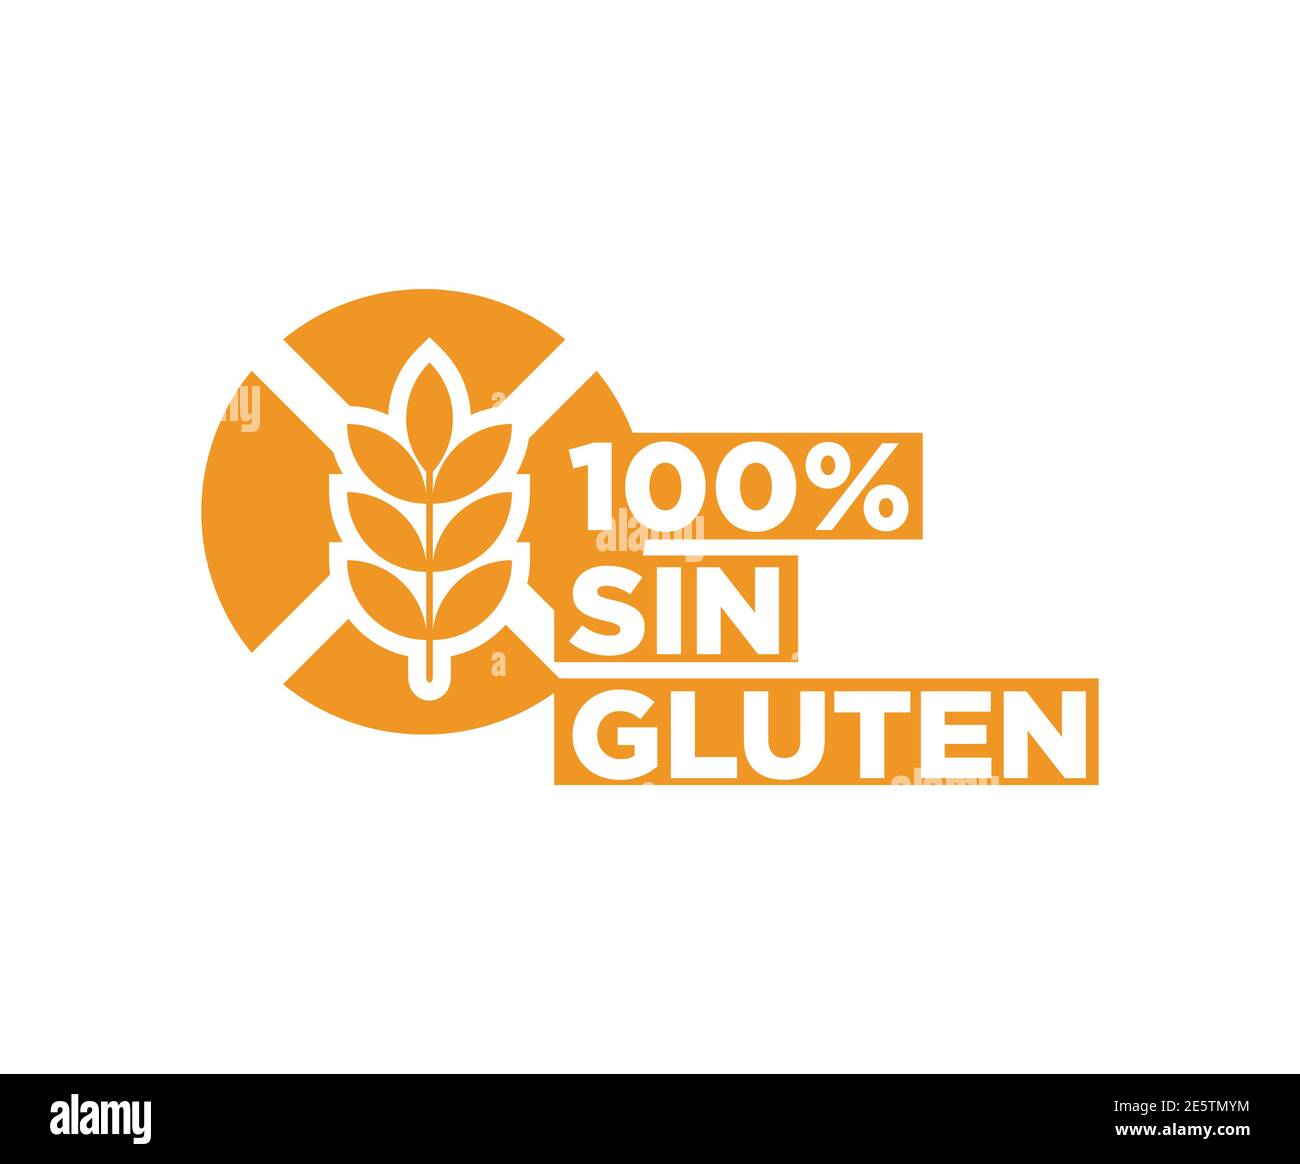 Gluten free icon written in Spanish Stock Vector